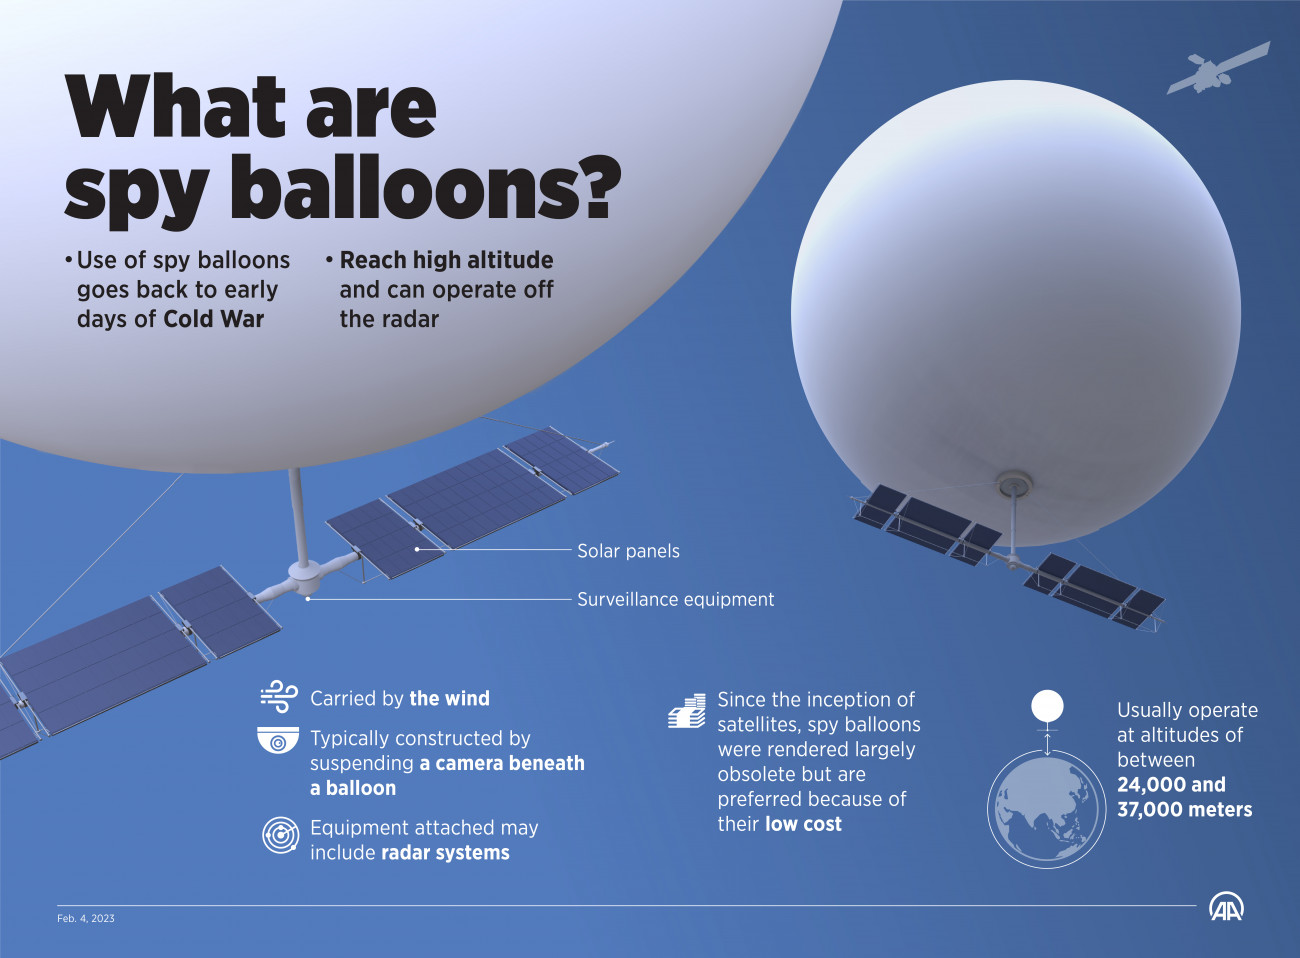 A kémballonok használatának története a hidegháborúig nyúlik vissza. Ezek az eszközök olyan magasan képesek repülni - általában 24-37 ezer méteren -, hogy a radarok nem észlelik őket. A széllel sodródnak, a központi irányítópanelt, az adott esetben rászerelt radart és kamerát napelemekkel látják el árammal. A műholdak megjelenése óta a kémballonok nagyrészt elavulttá váltak, de alacsony költségük miatt mégis használatban maradtak. (Elmurod Usubaliev/Anadolu Agency/Getty Images)